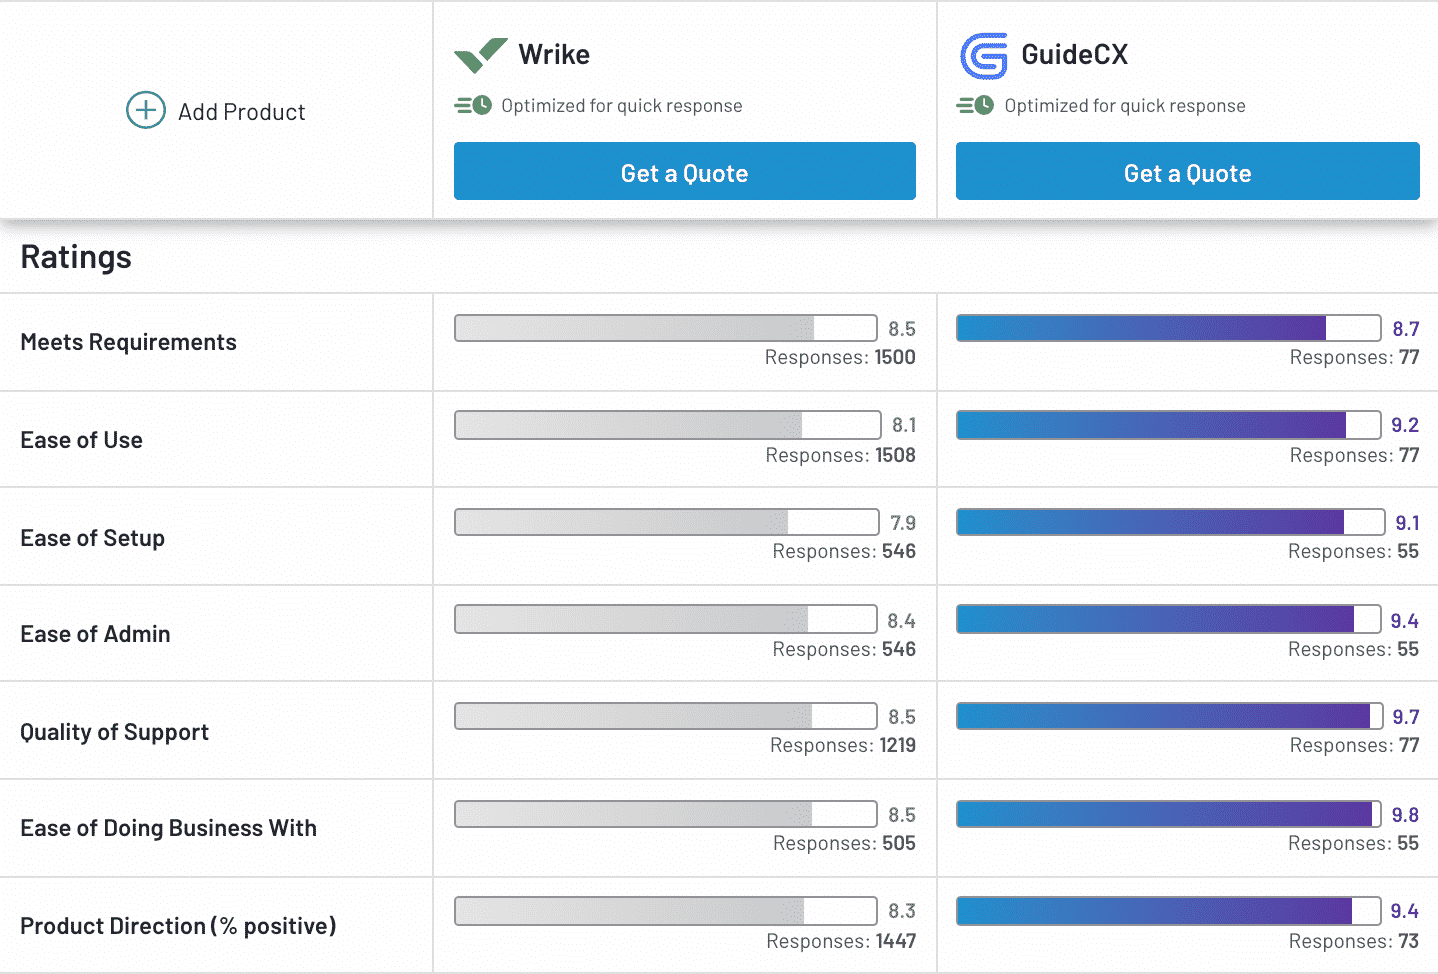 GuideCX vs. Wrike ratings